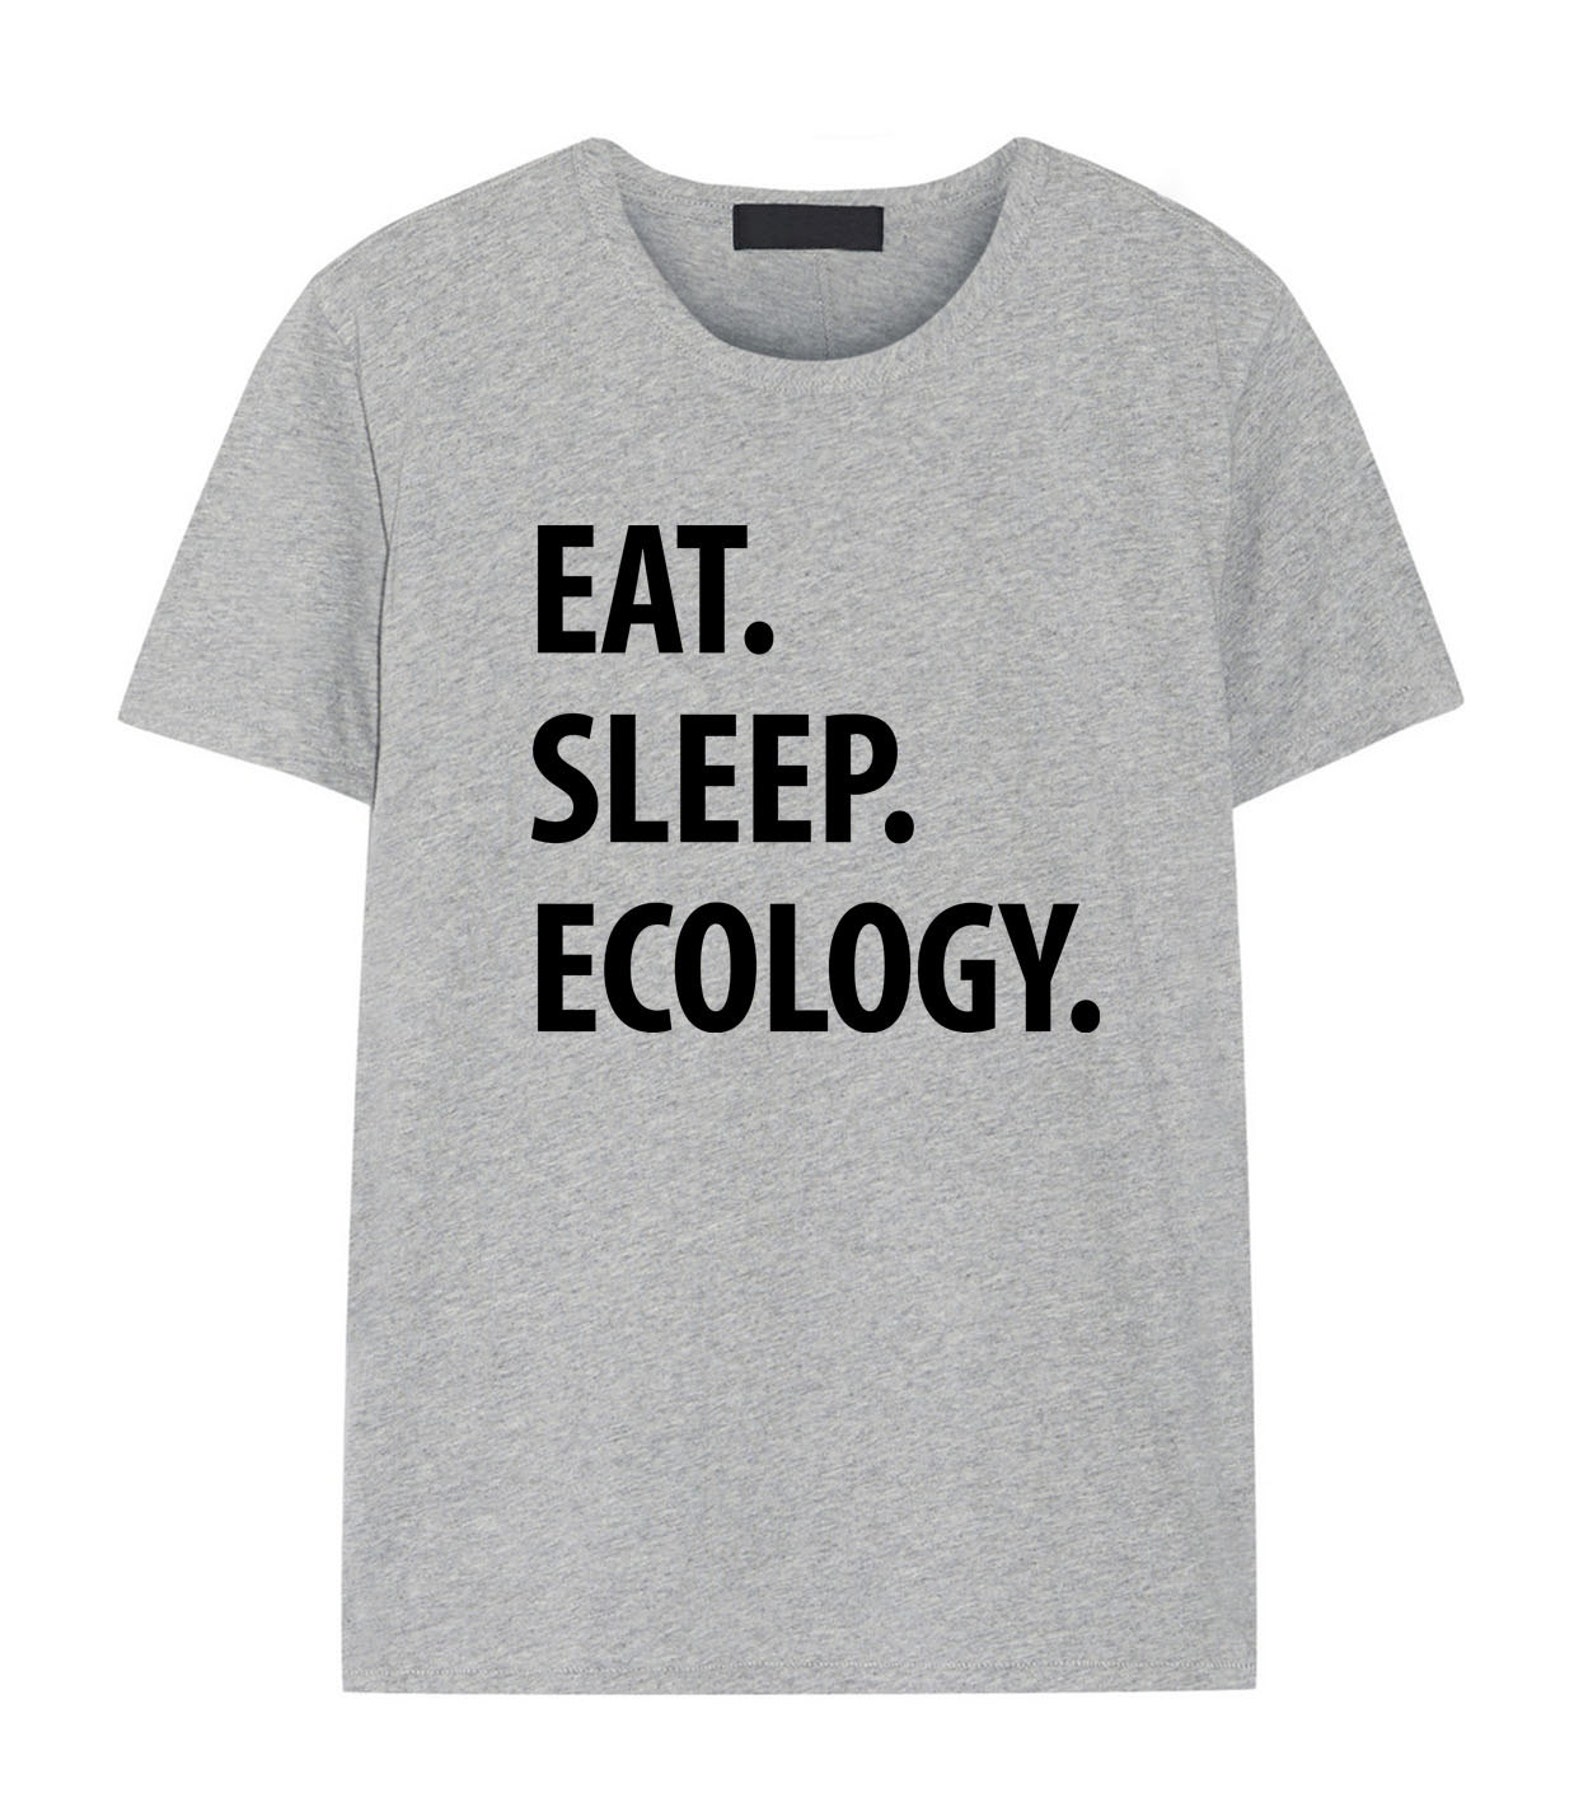 Сон басс. Футболка eat Sleep Dance. Woman in Science футболки. Alphorn одежда. Accountant футболка.